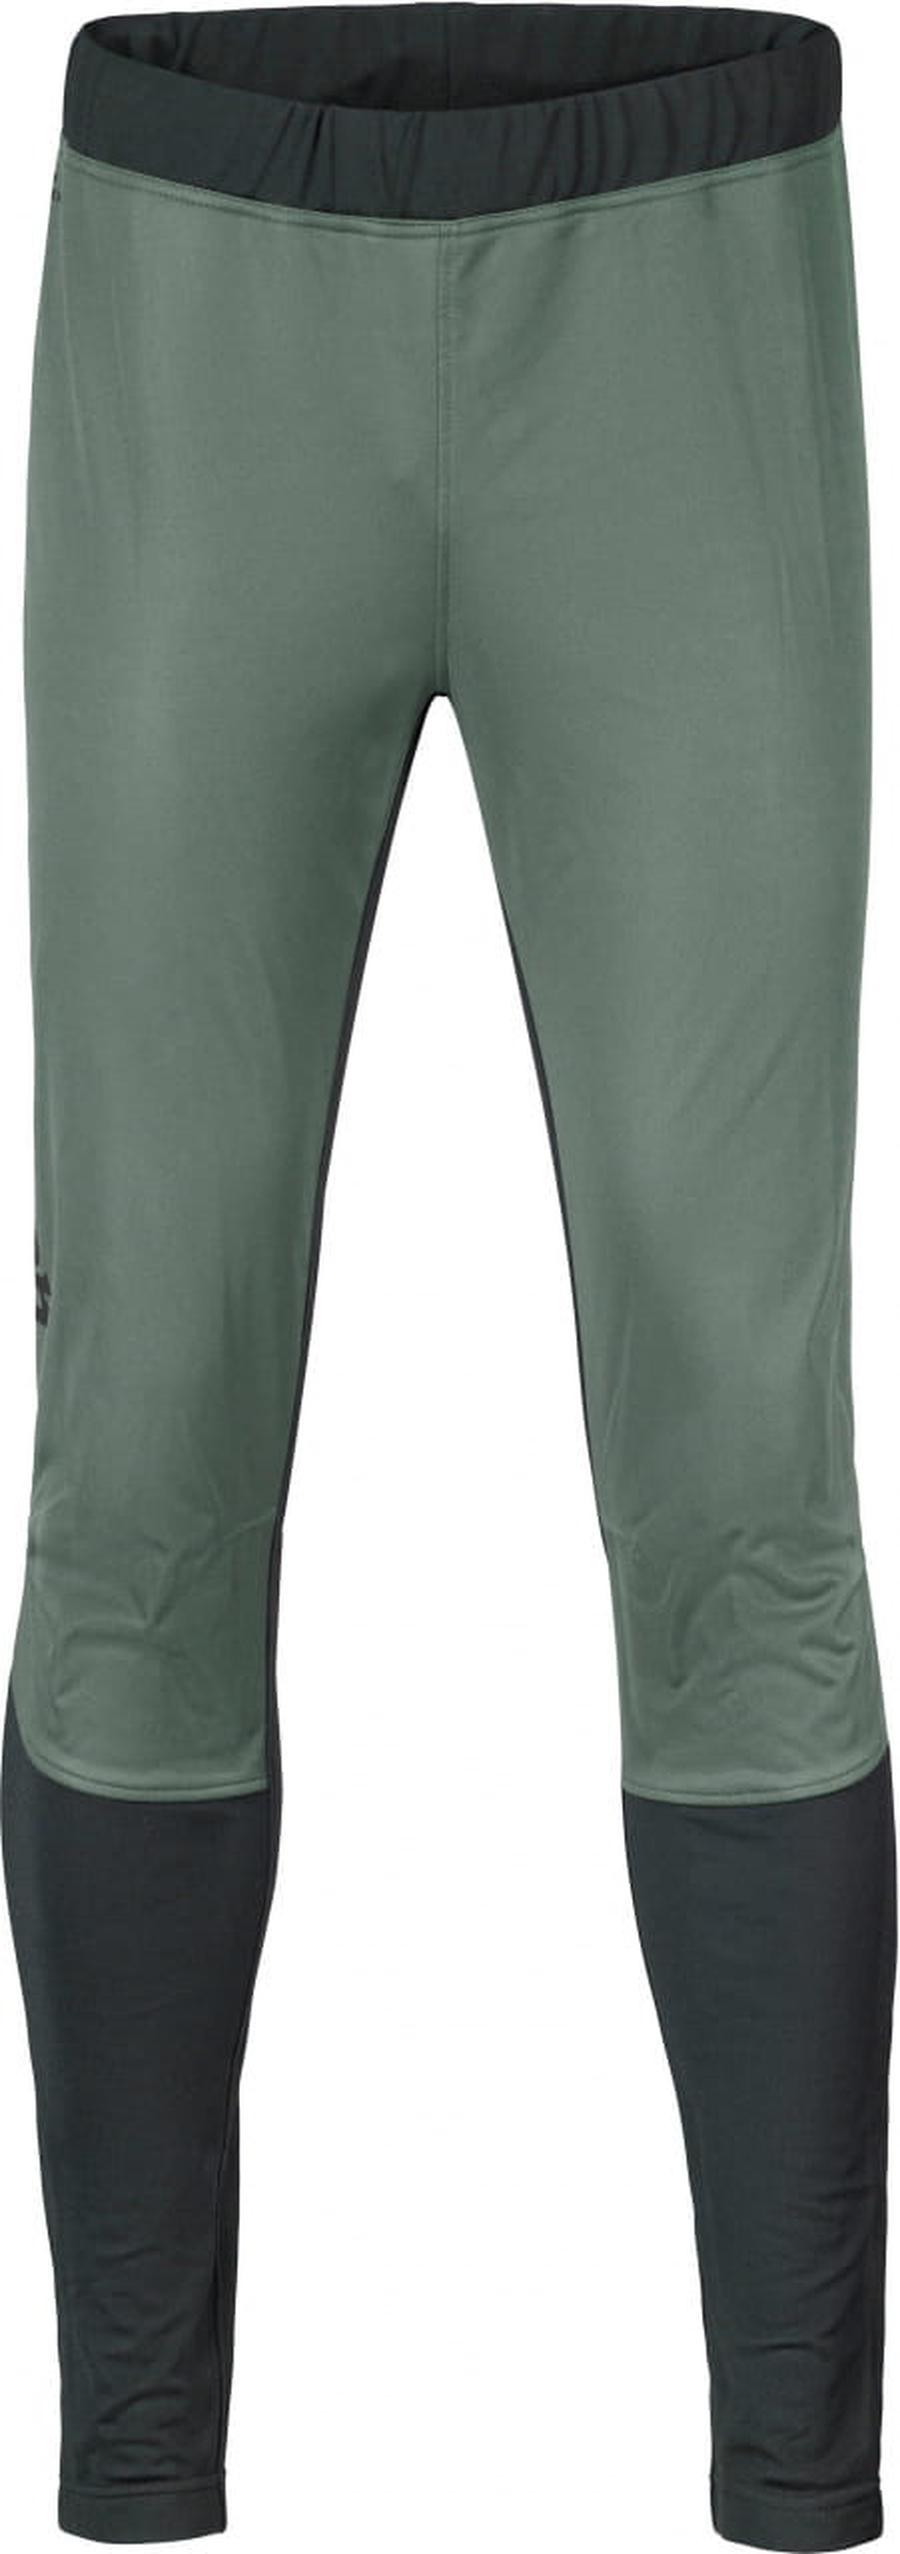 Pánské funkční kalhoty Hannah Nordic Pants Balsam green/anthracite L